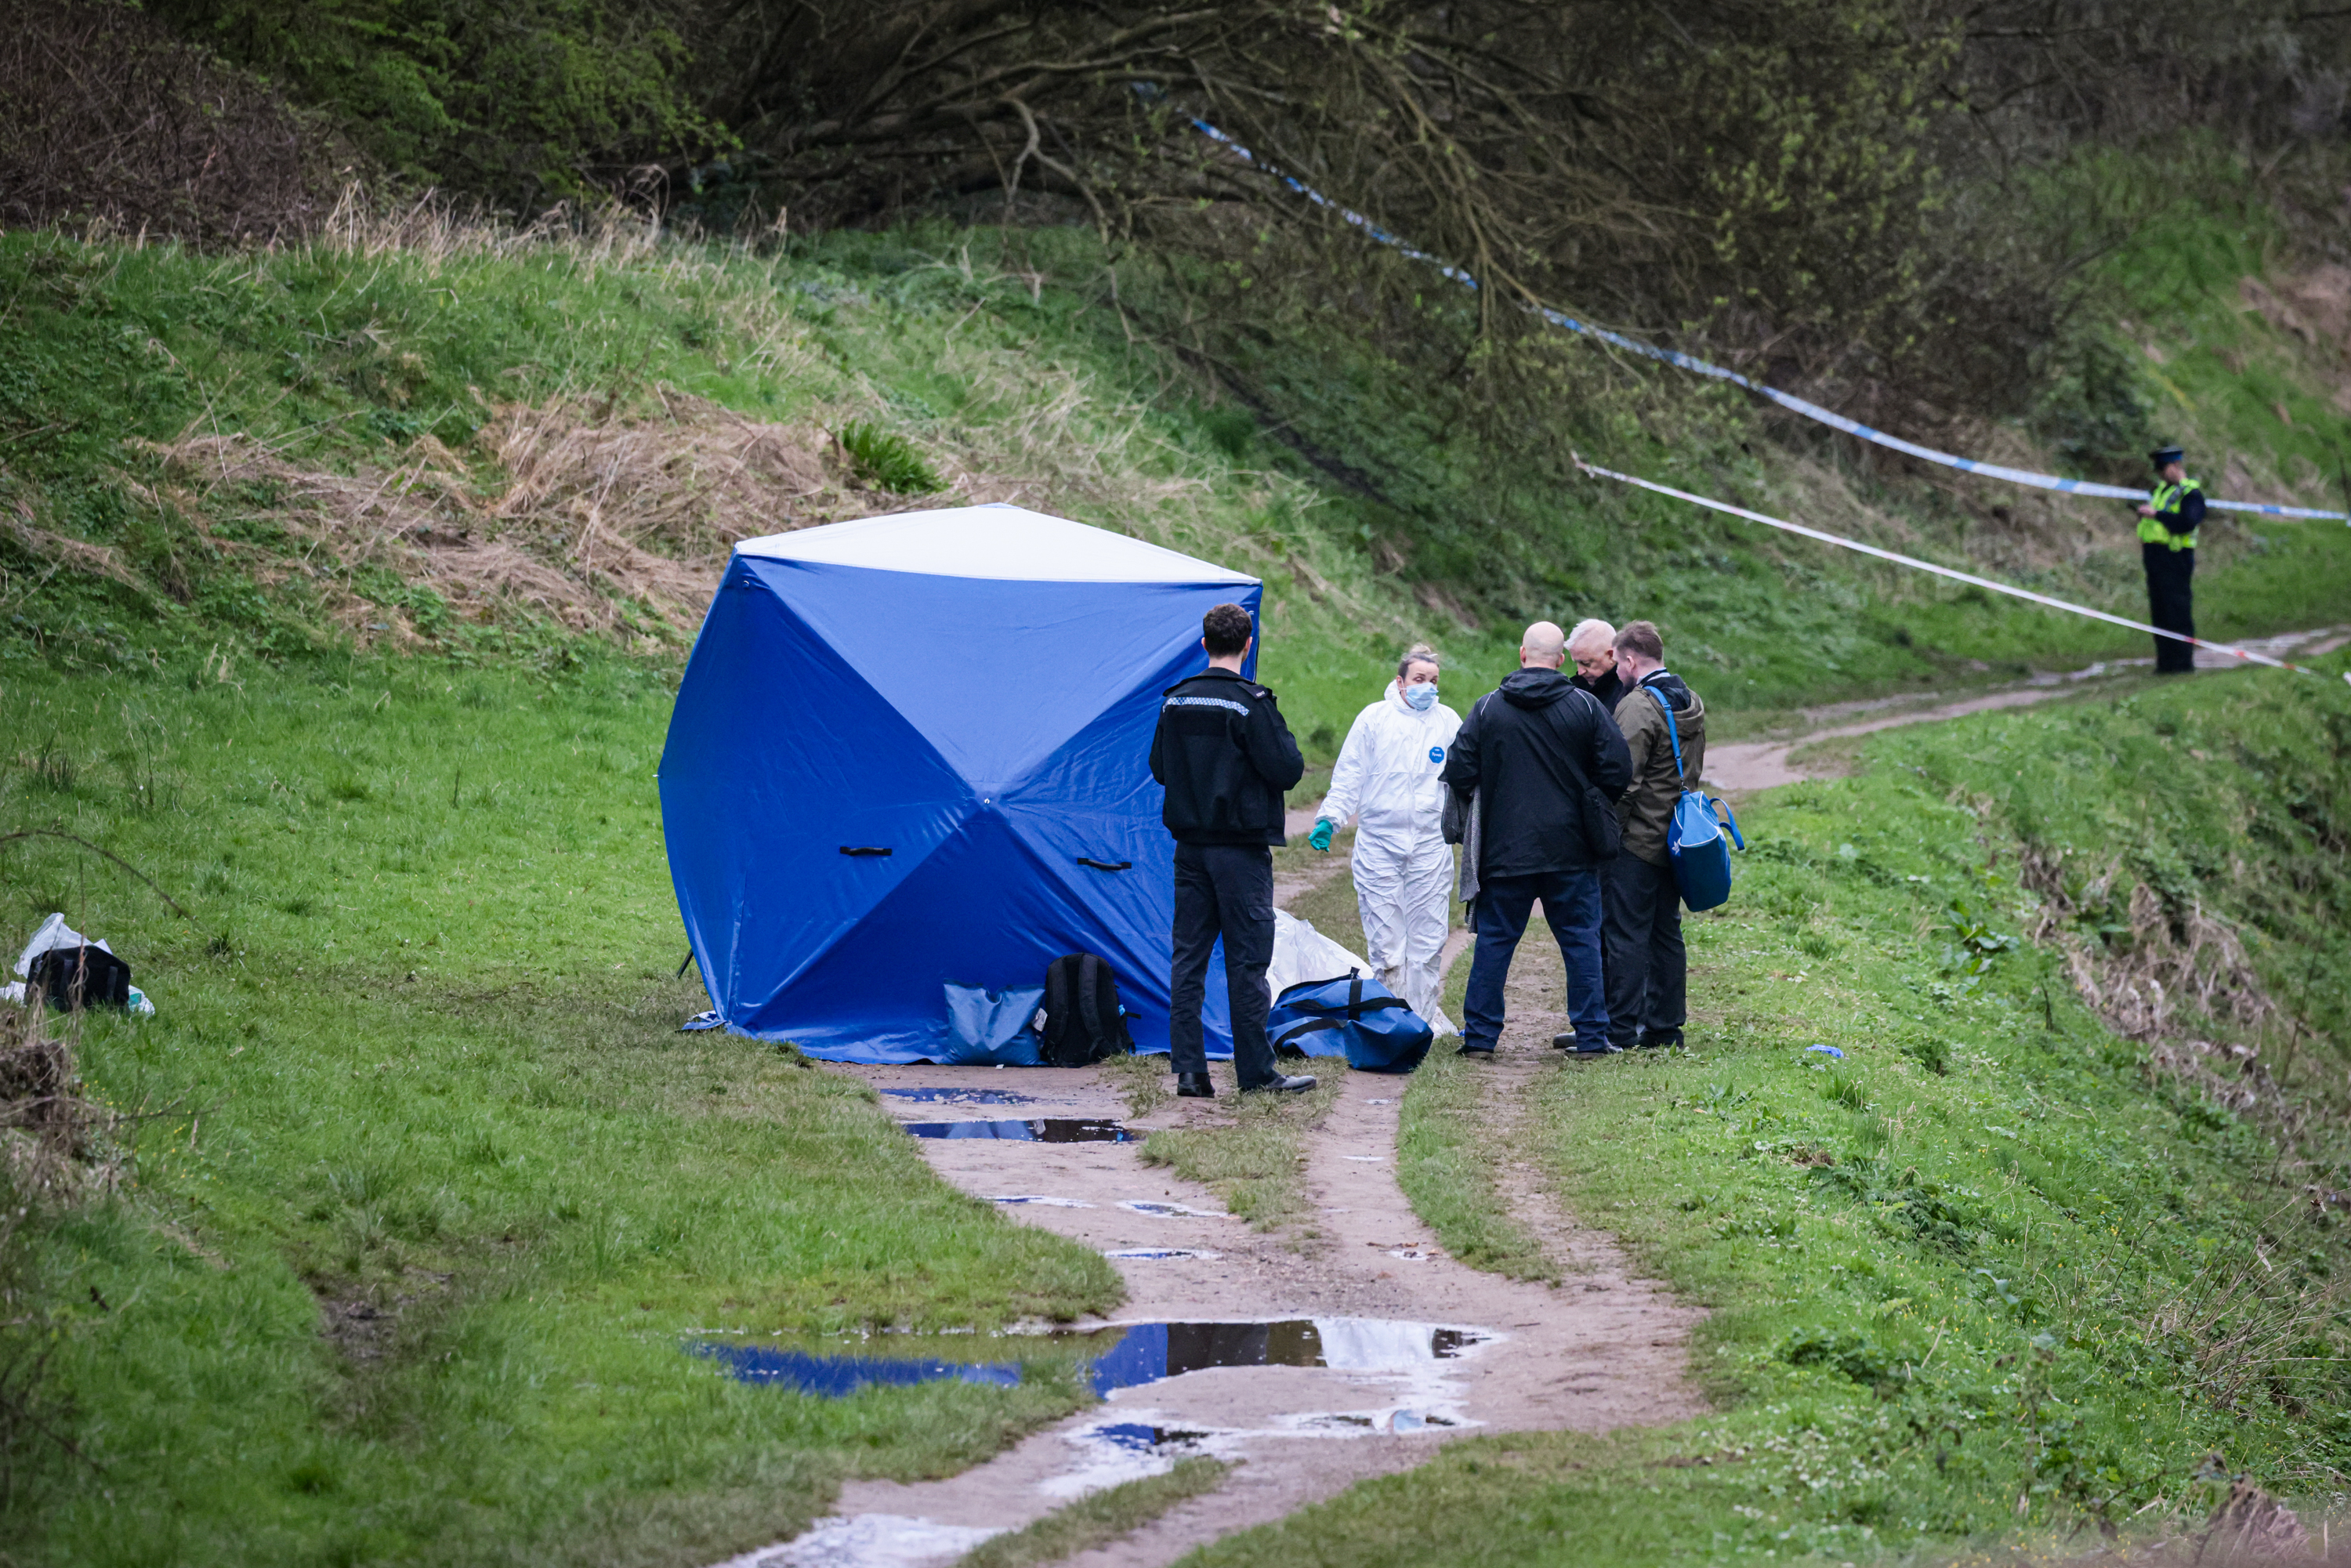 Le corps sans vie d'une femme a été retrouvé dans la rivière Mersey, au sud de Manchester, le 21 mars